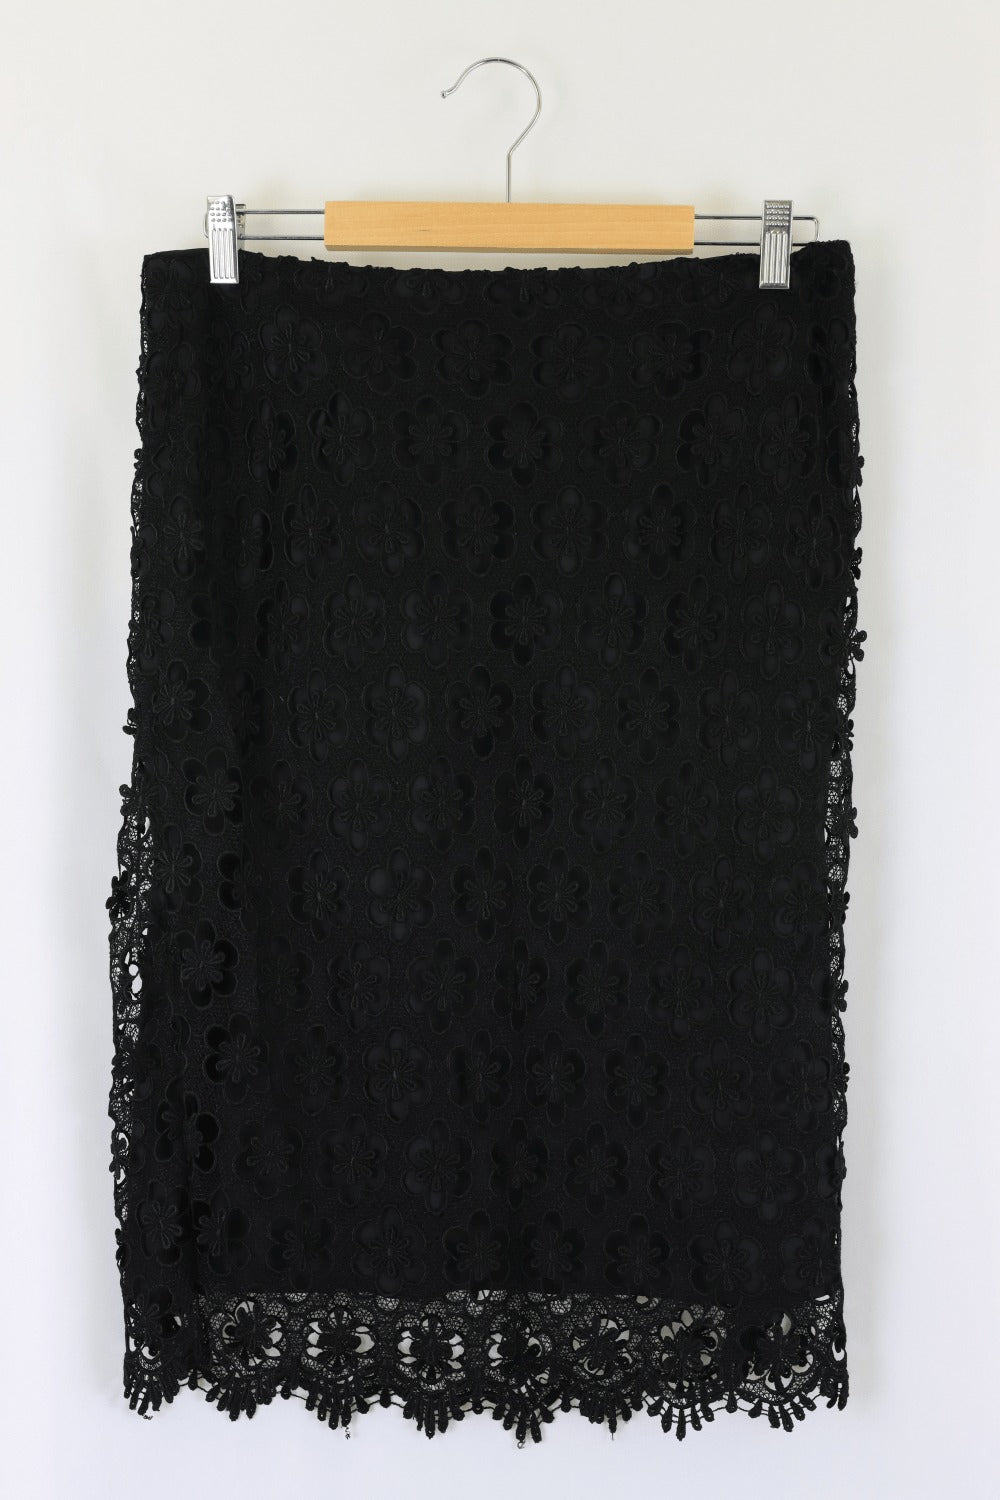 Alfani Black Lace Skirt 12